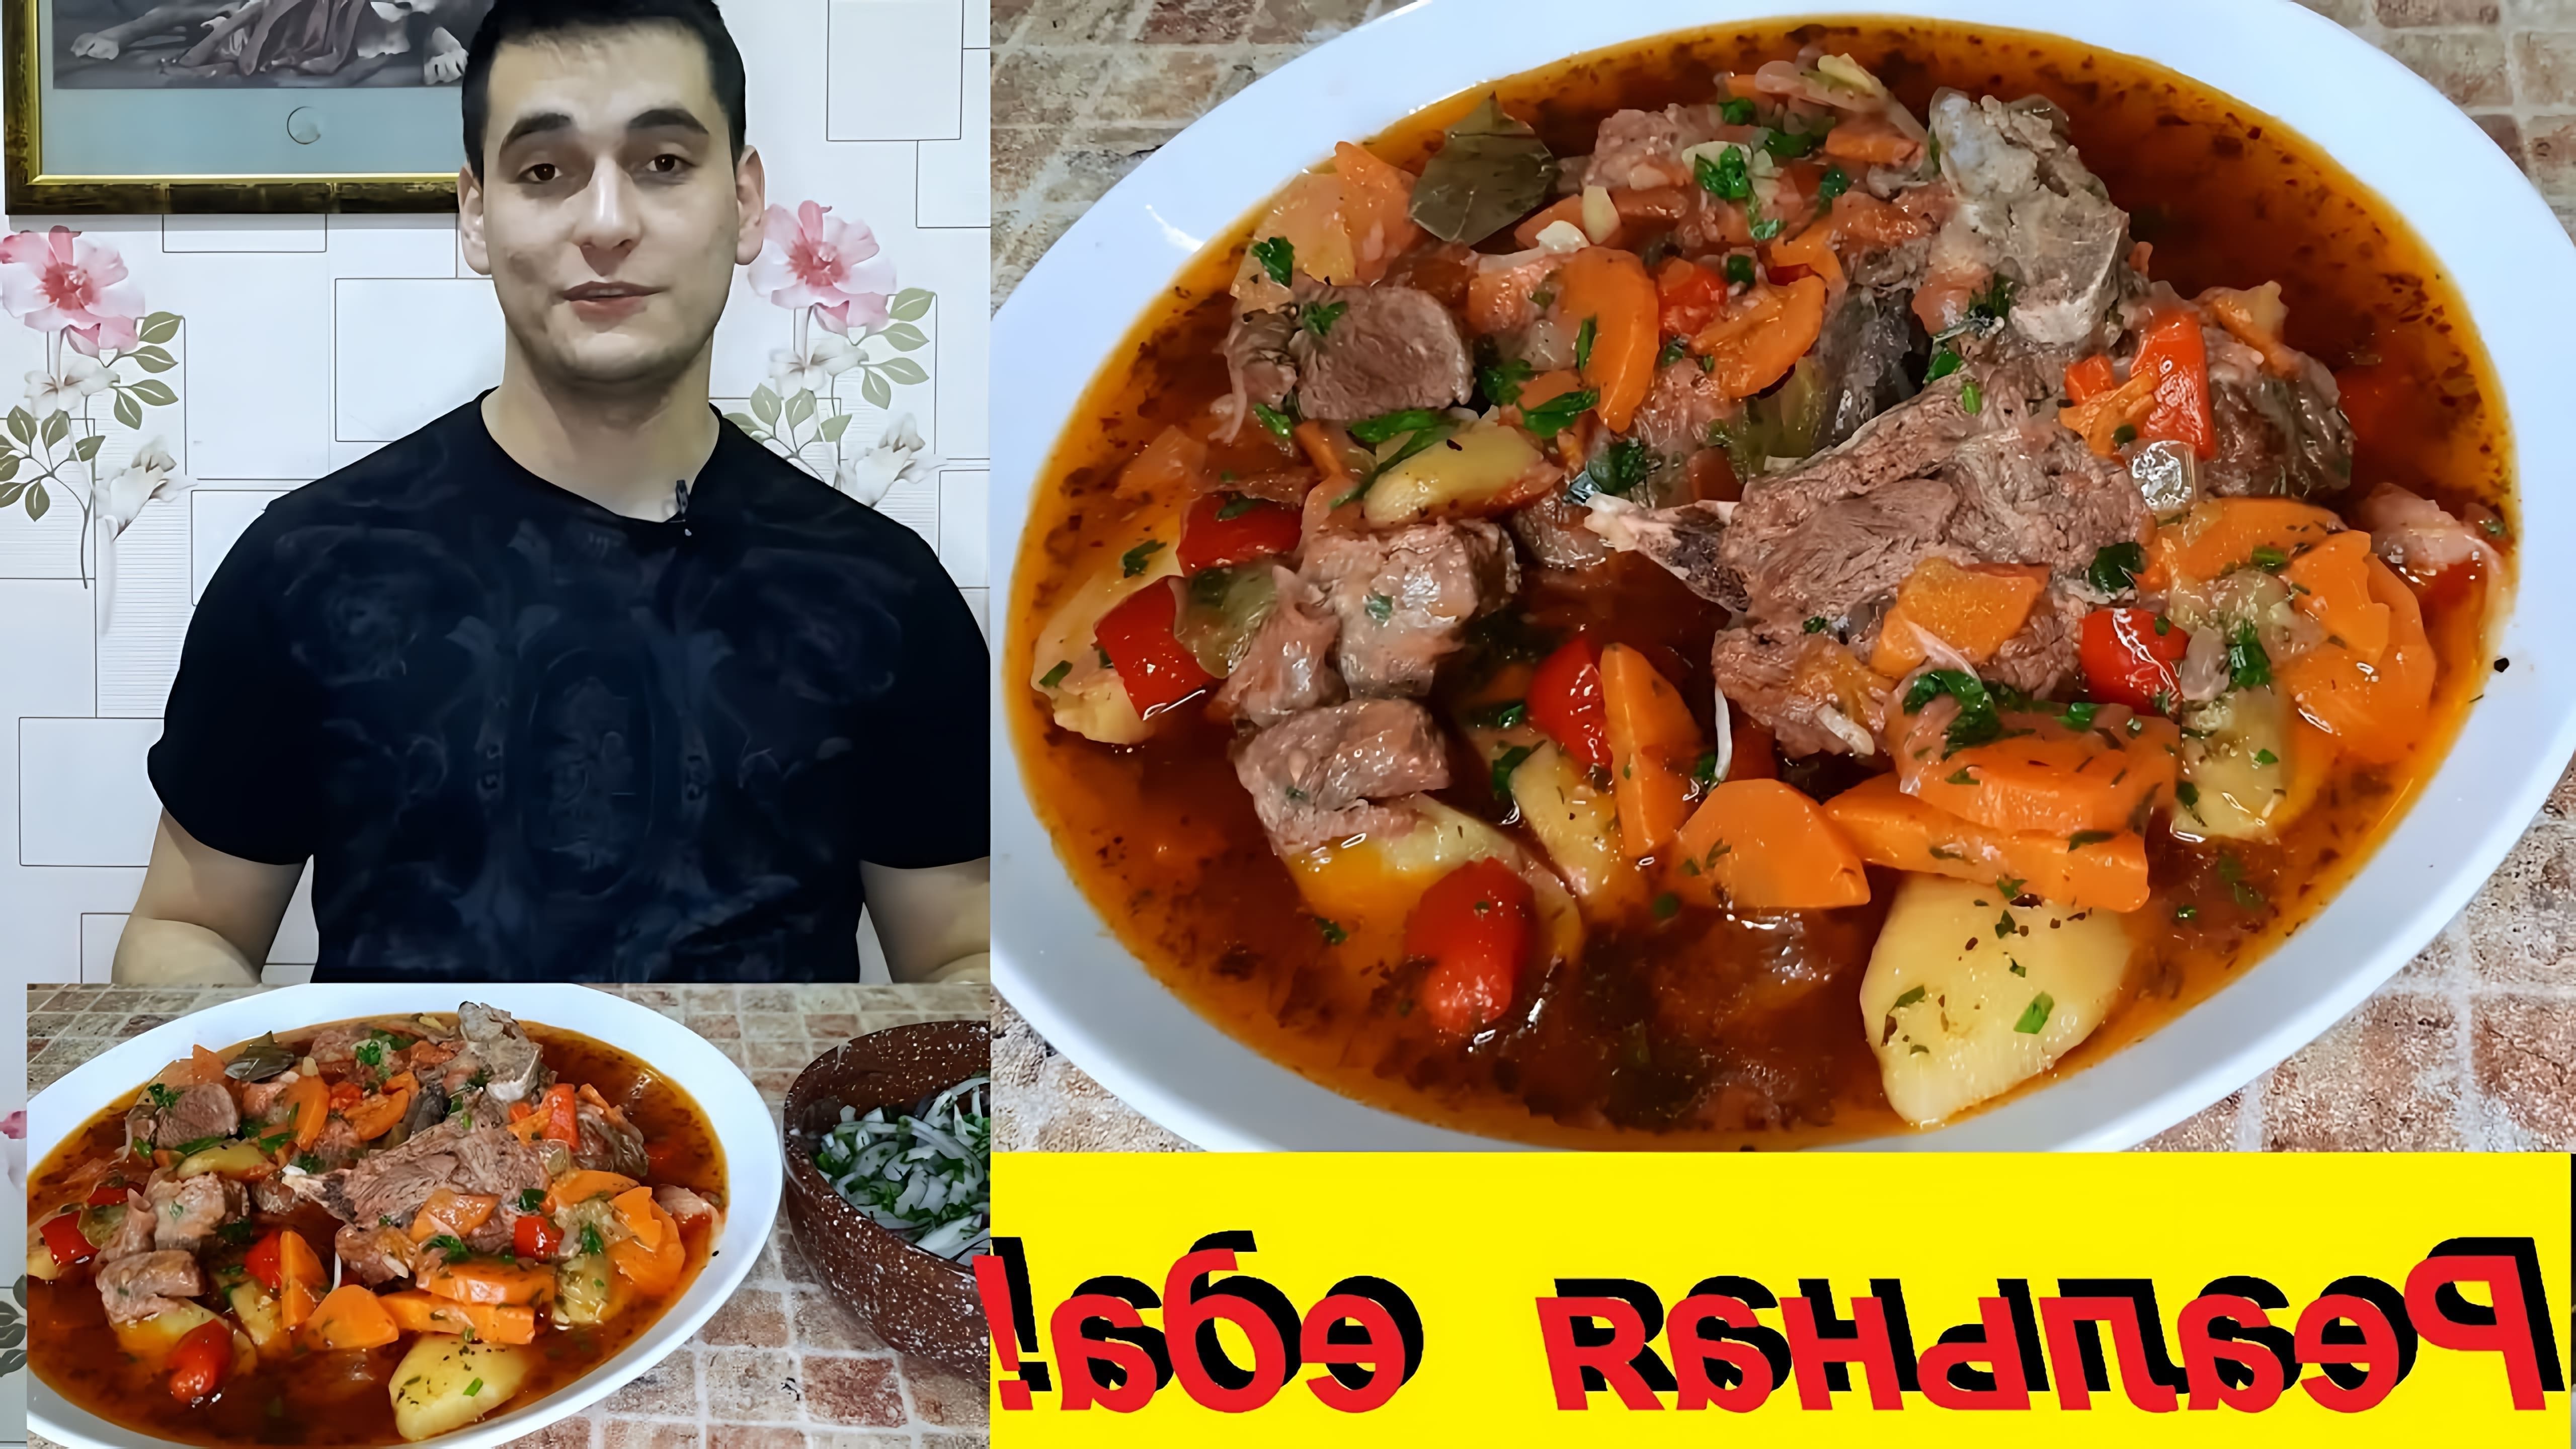 В этом видео Ибрагим готовит шулюм, или охотничий суп, в казане